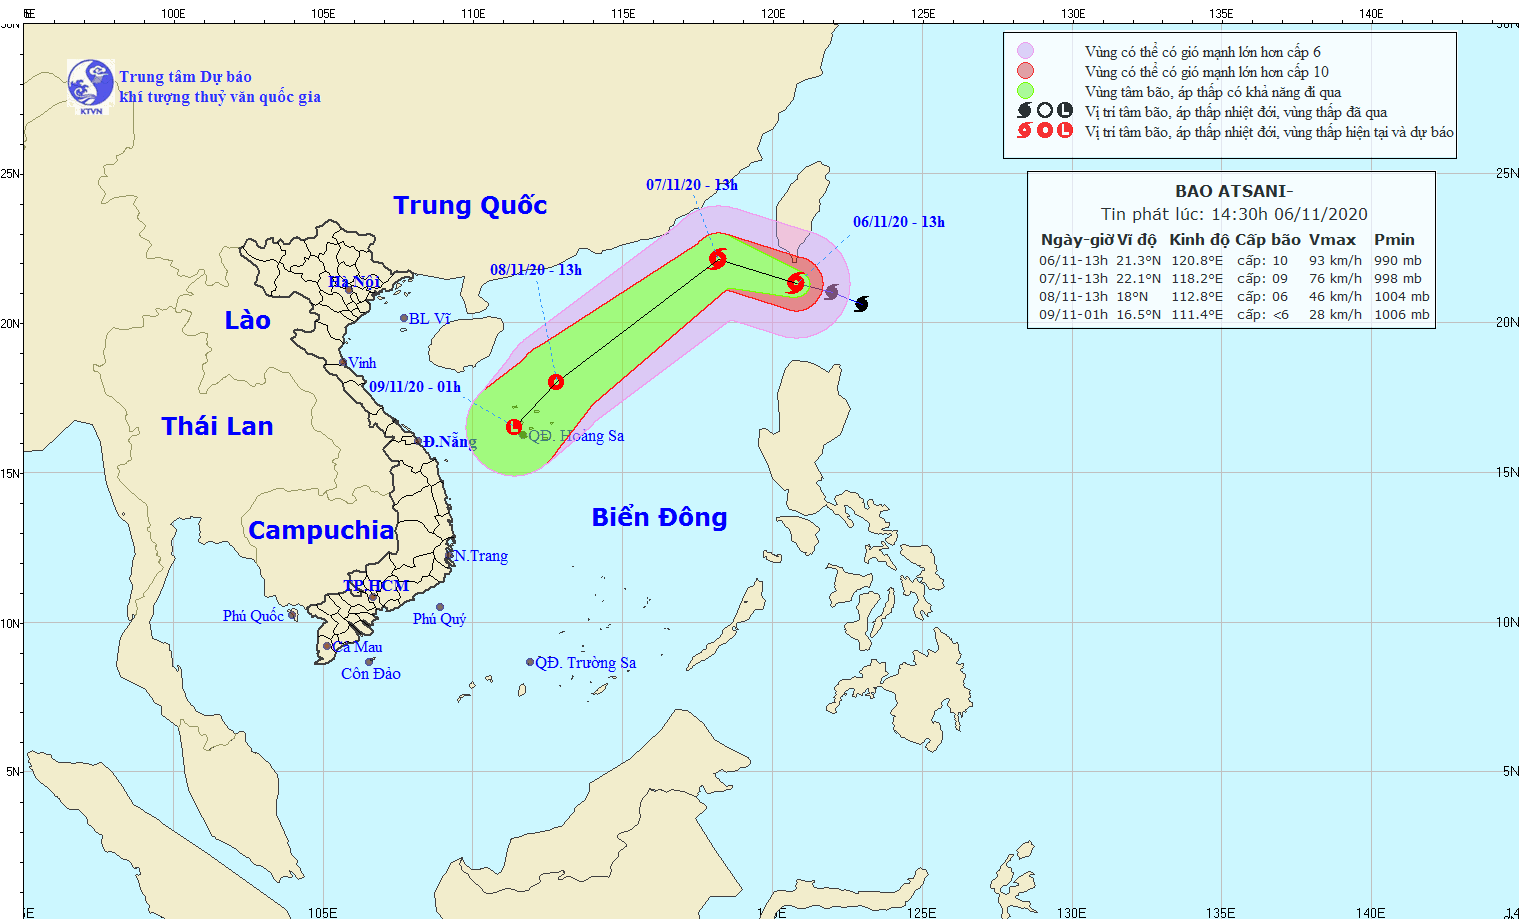 Bão Astani giật cấp 12 cách đảo Đài Loan 230km, đang di chuyển vào biển Đông